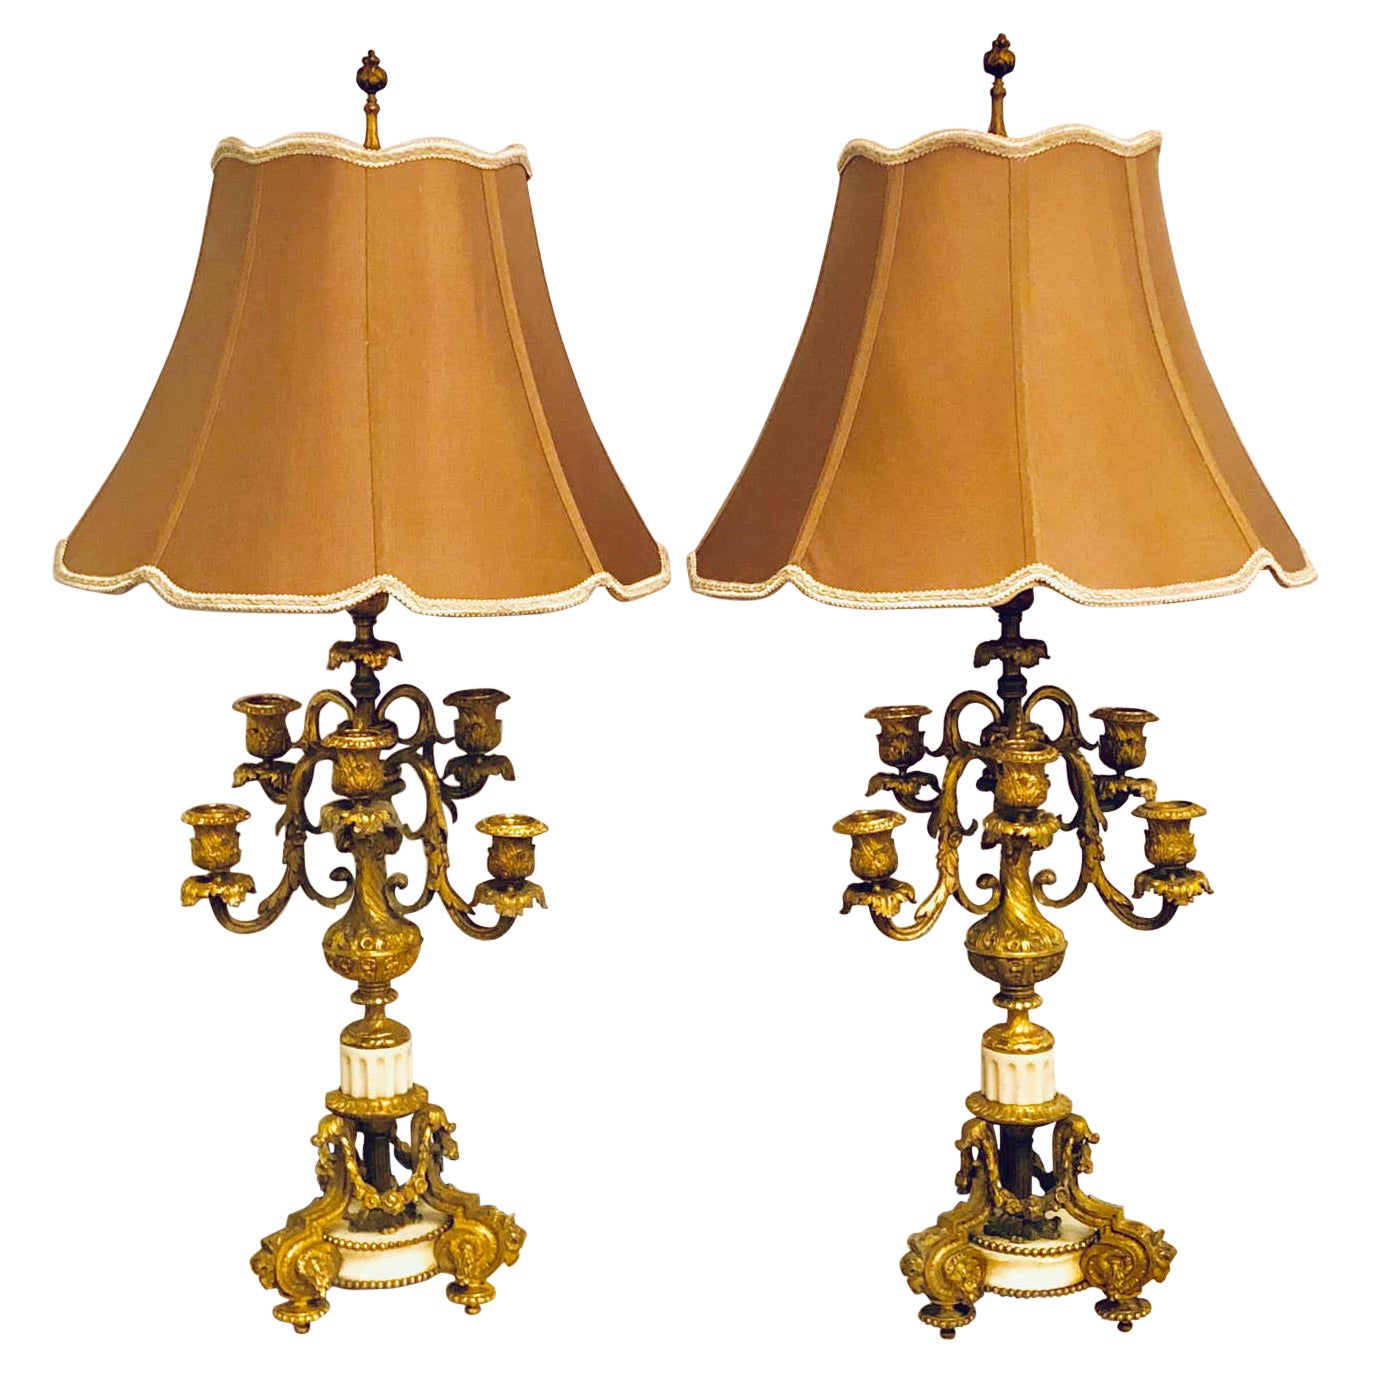 Paar Dor Bronze-Kandelaber mit 7 Lichtern und Marmorsockel aus dem 19. Jahrhundert, als Lampe montiert